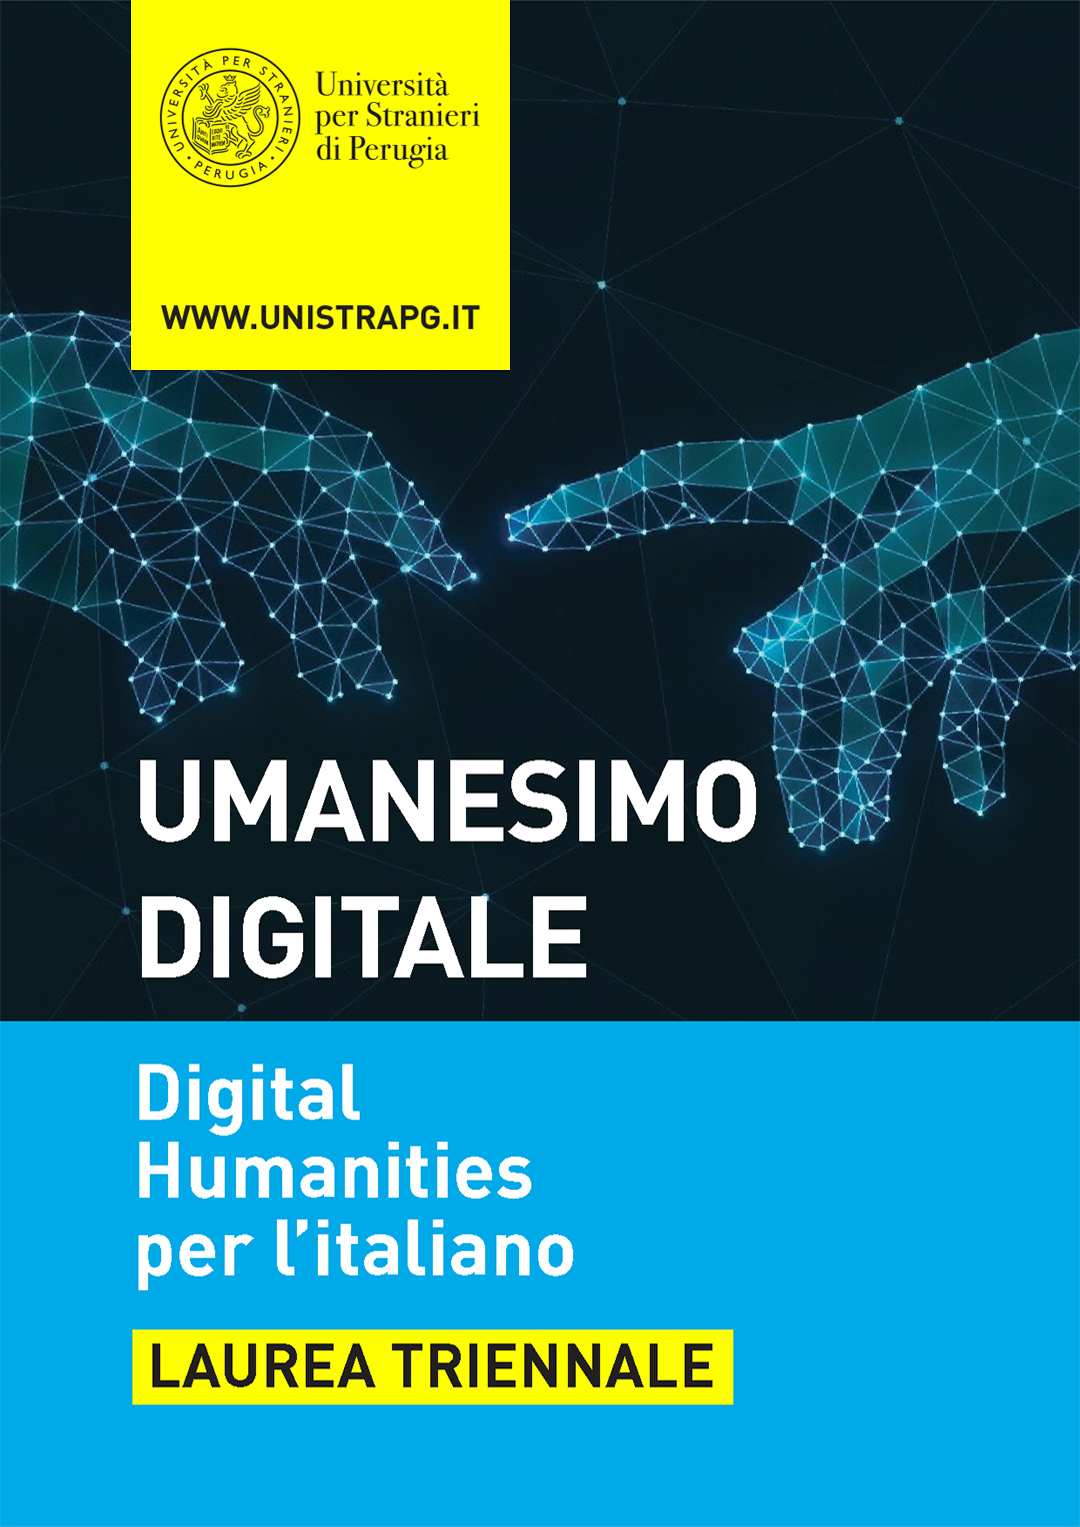 Digital humanities per l’italiano